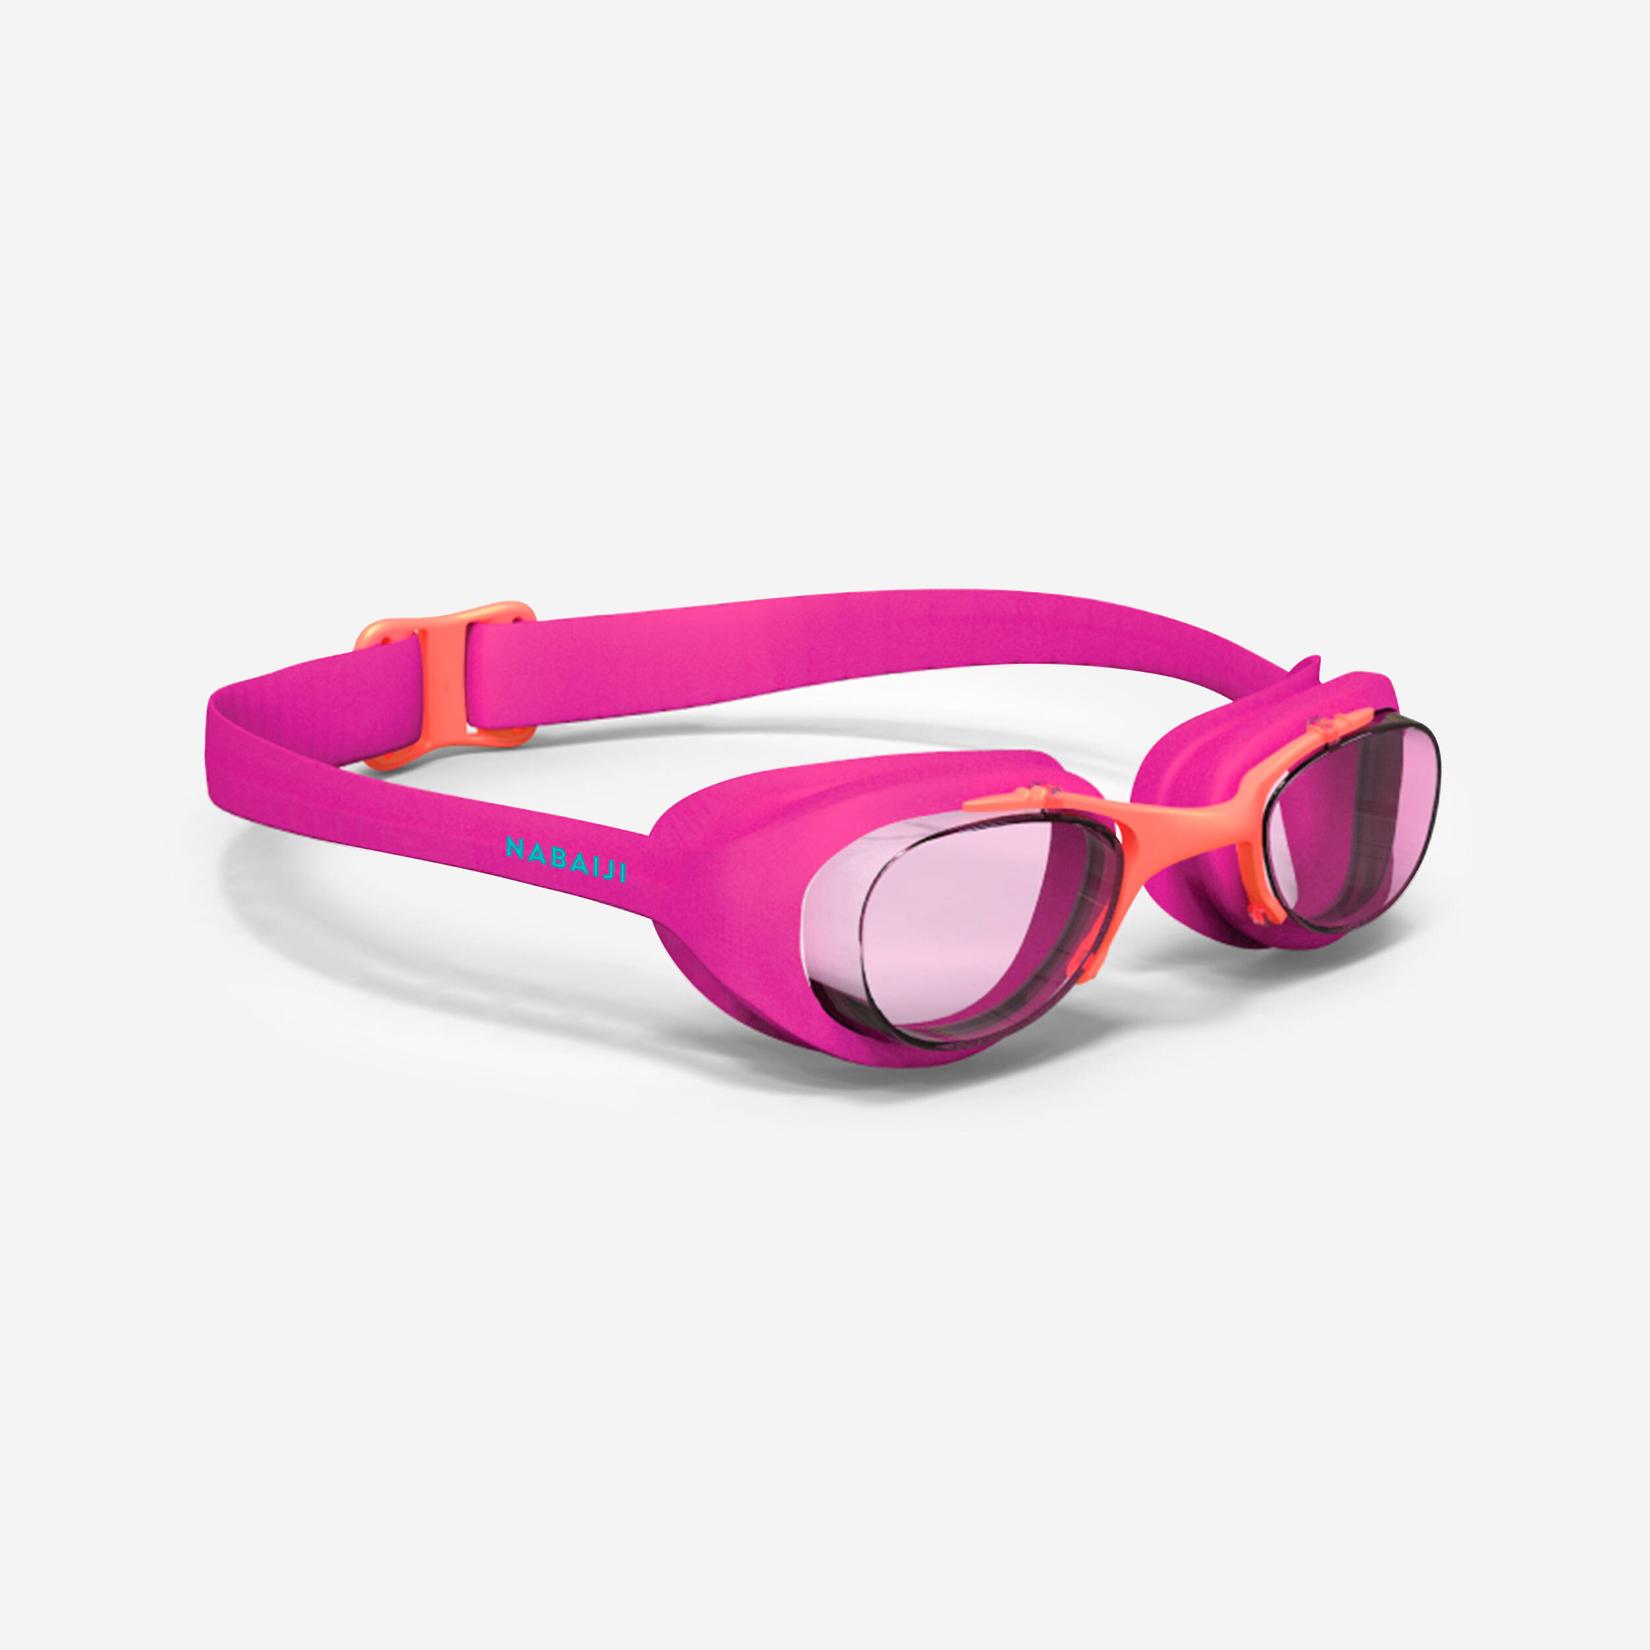 Oferta de Gafas de natación ajustables para Niños Nabaiji Xbase 100 rosa por $25000 en Decathlon